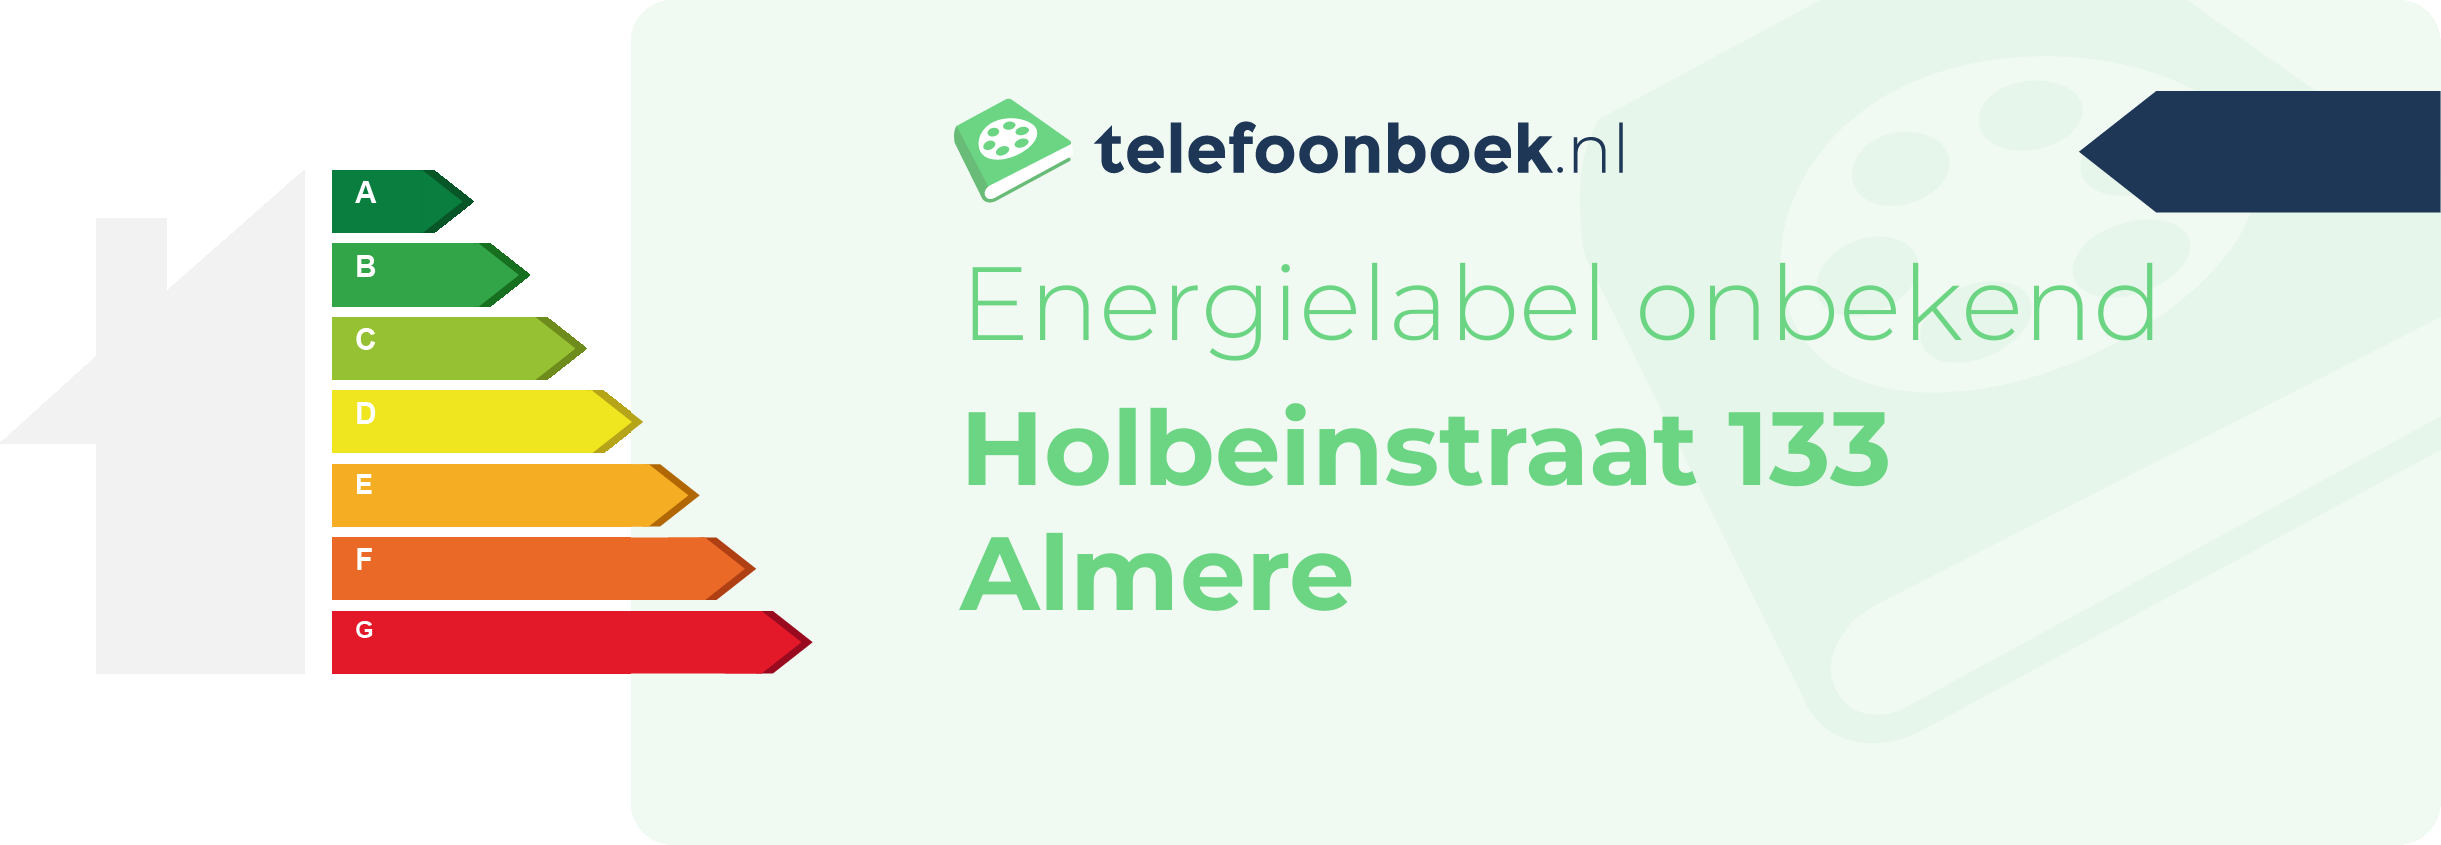 Energielabel Holbeinstraat 133 Almere